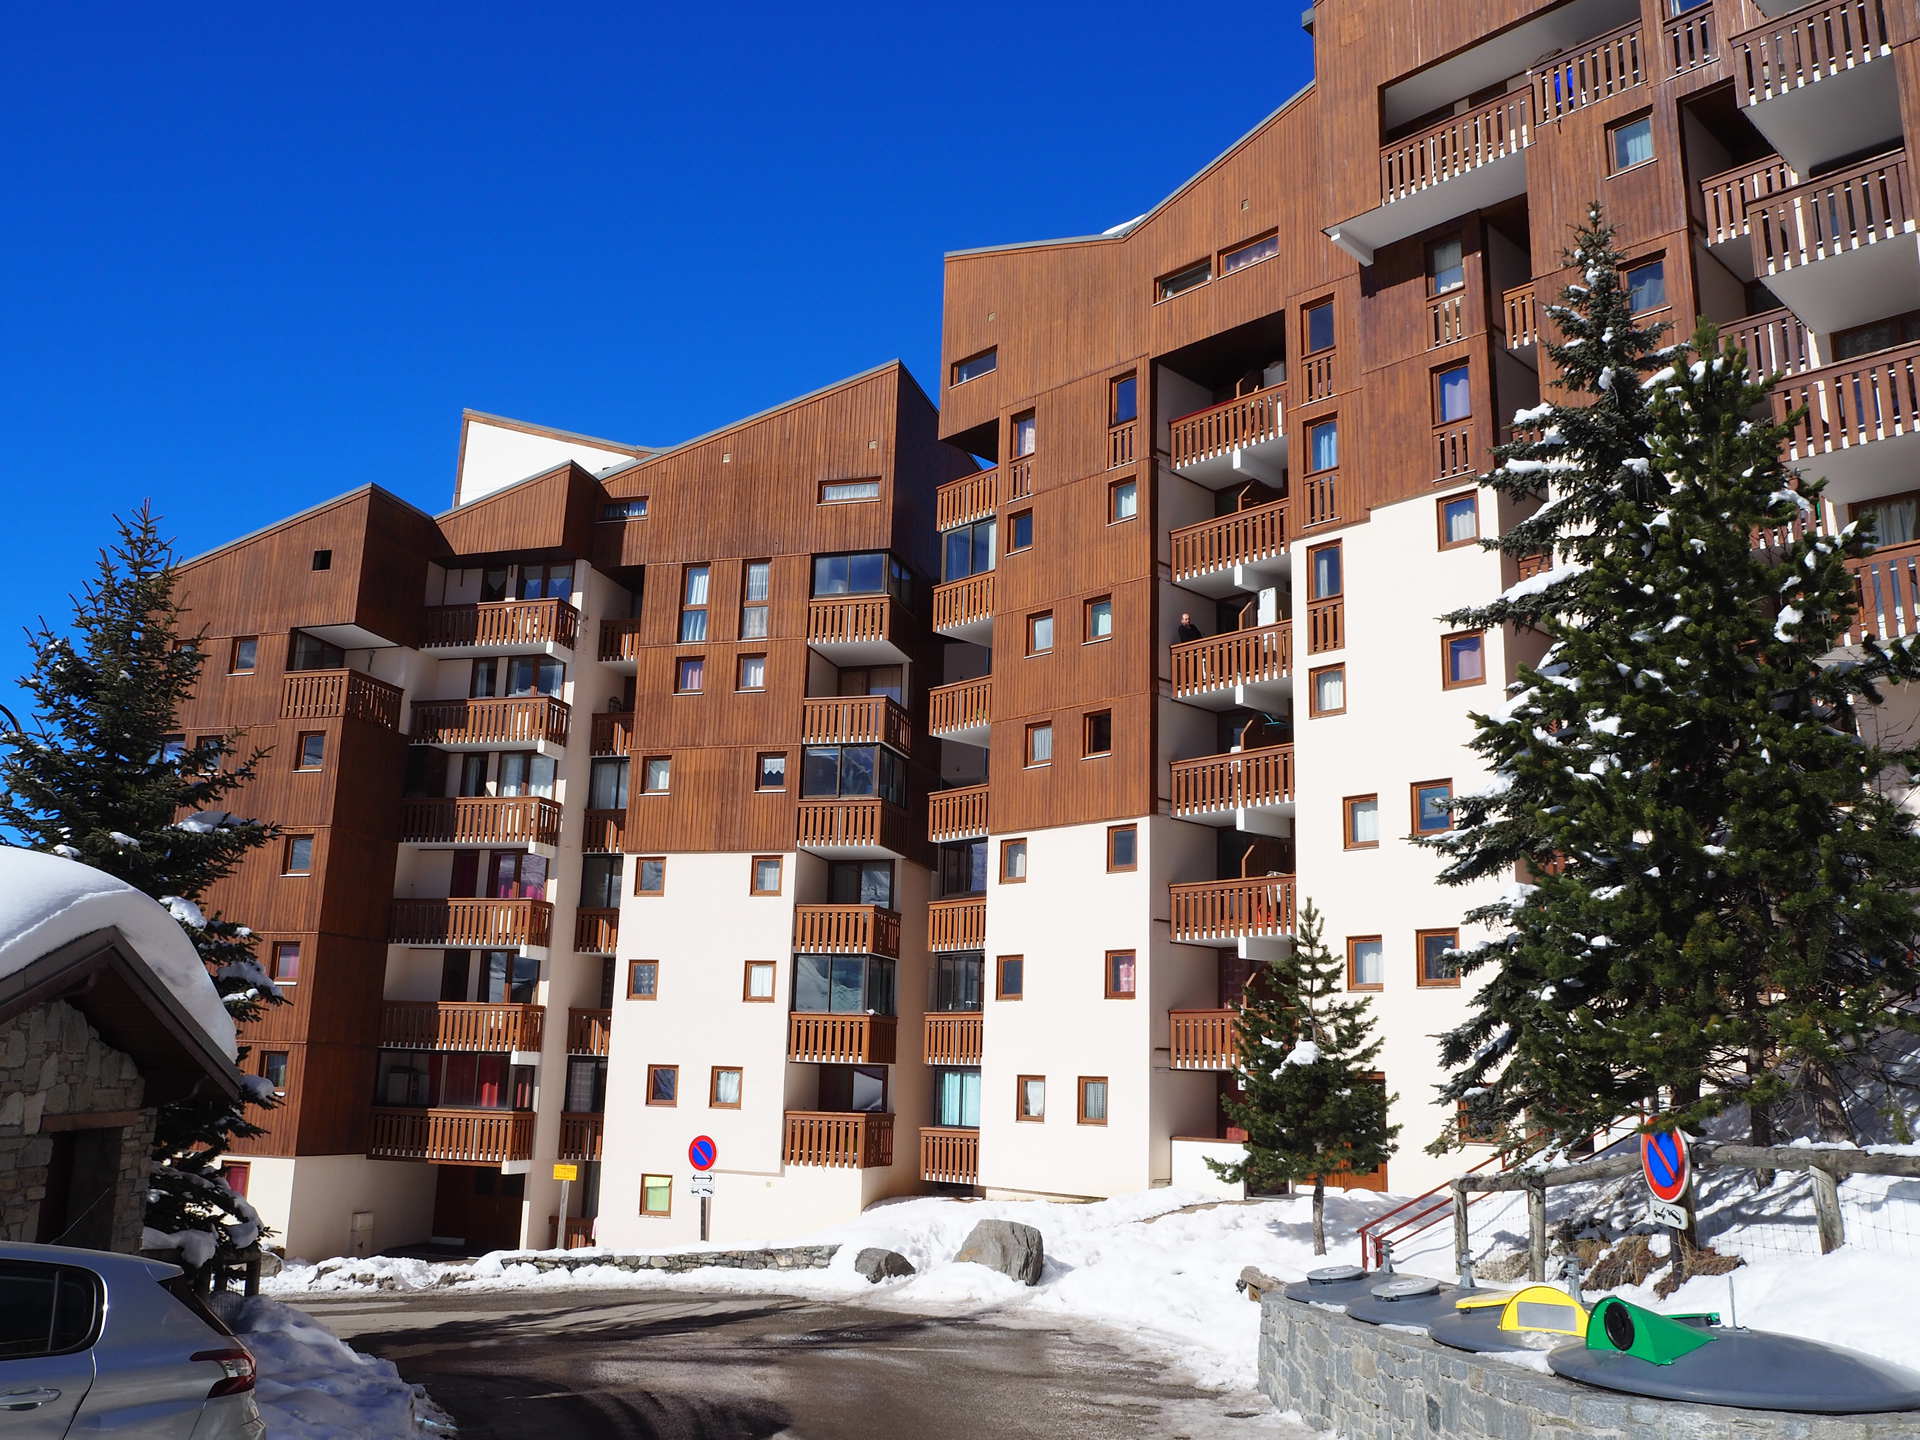 2 Pièces 4 personnes Annule - Appartements Ski Soleil - Les Menuires Bruyères